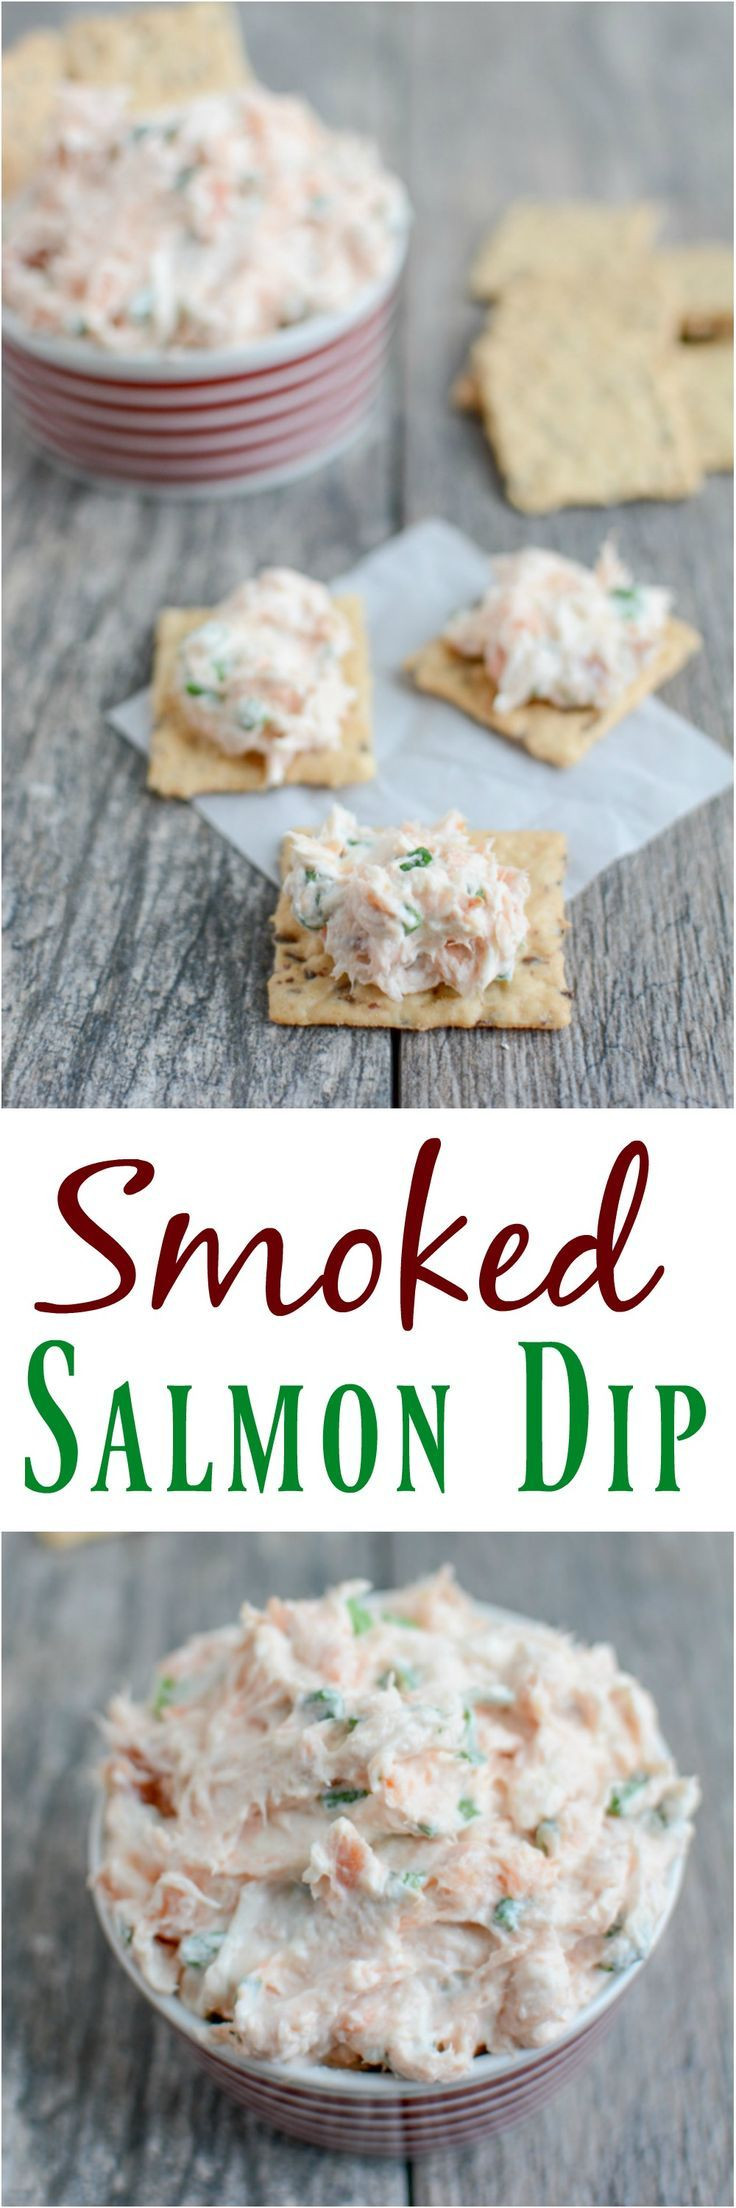 Rachael Ray Smoked Salmon Dip
 famous dave s smoked salmon dip recipe